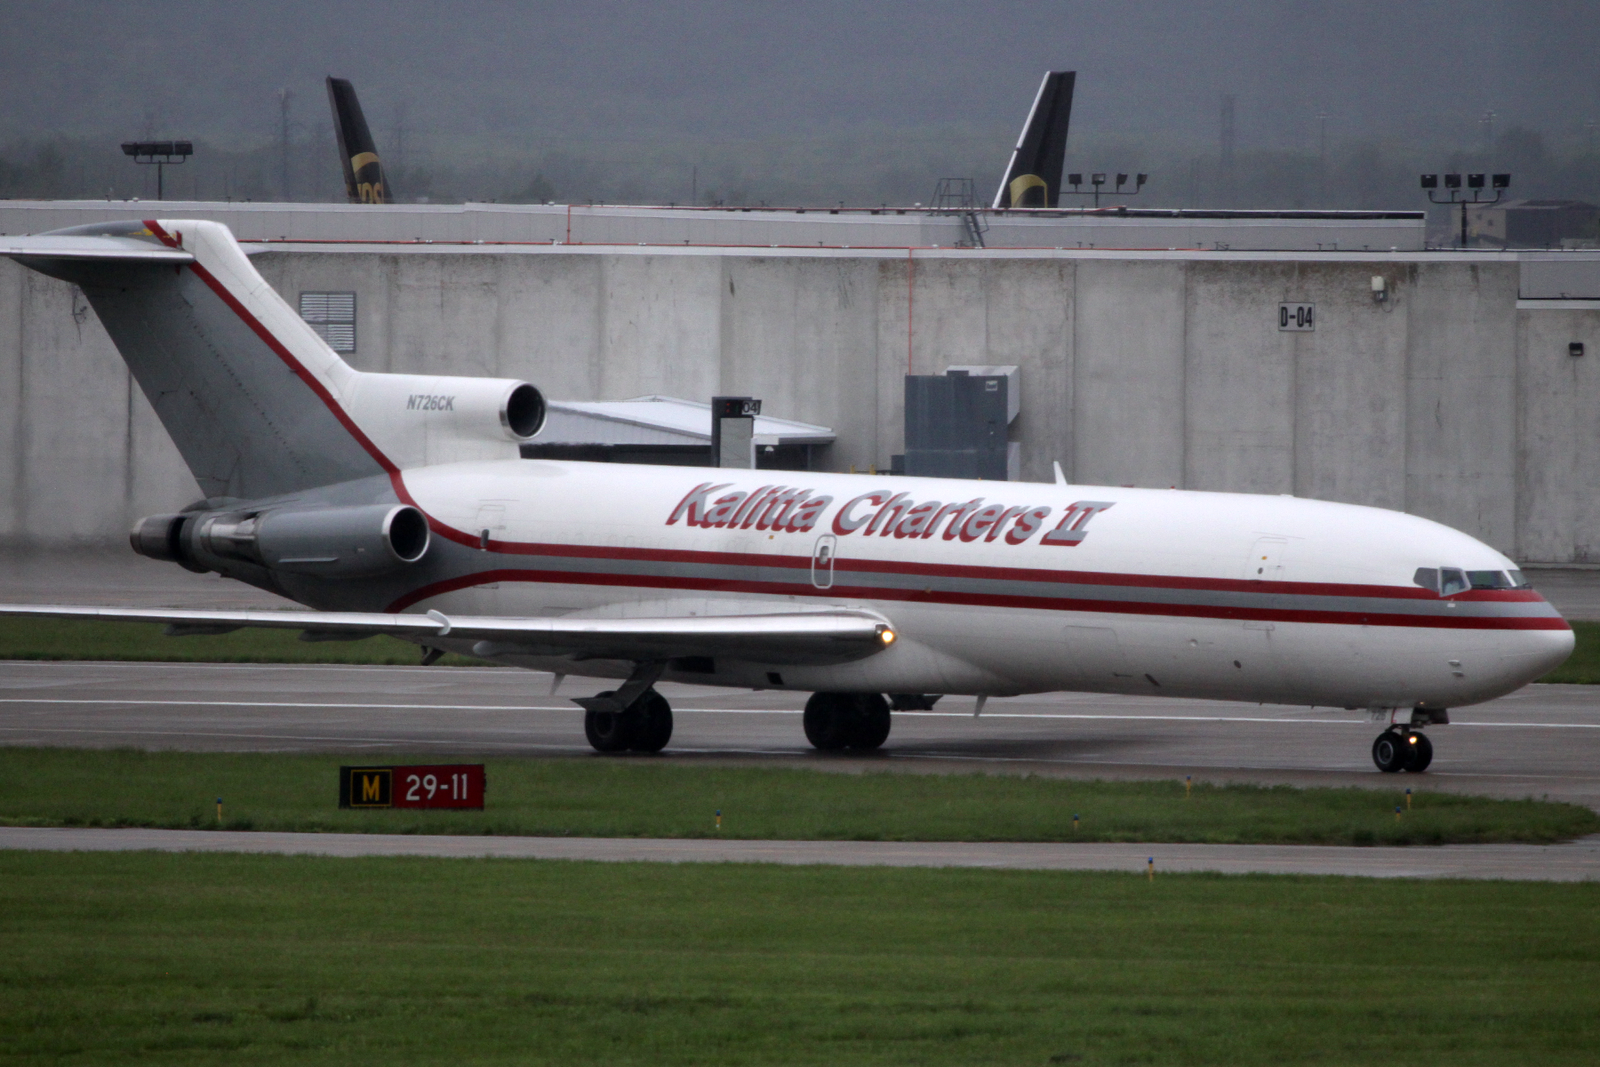 Kalitta Charters II llegó a operar un total de 9 unidades del Boeing 727 en diferentes versiones. Foto: aeroprints.com